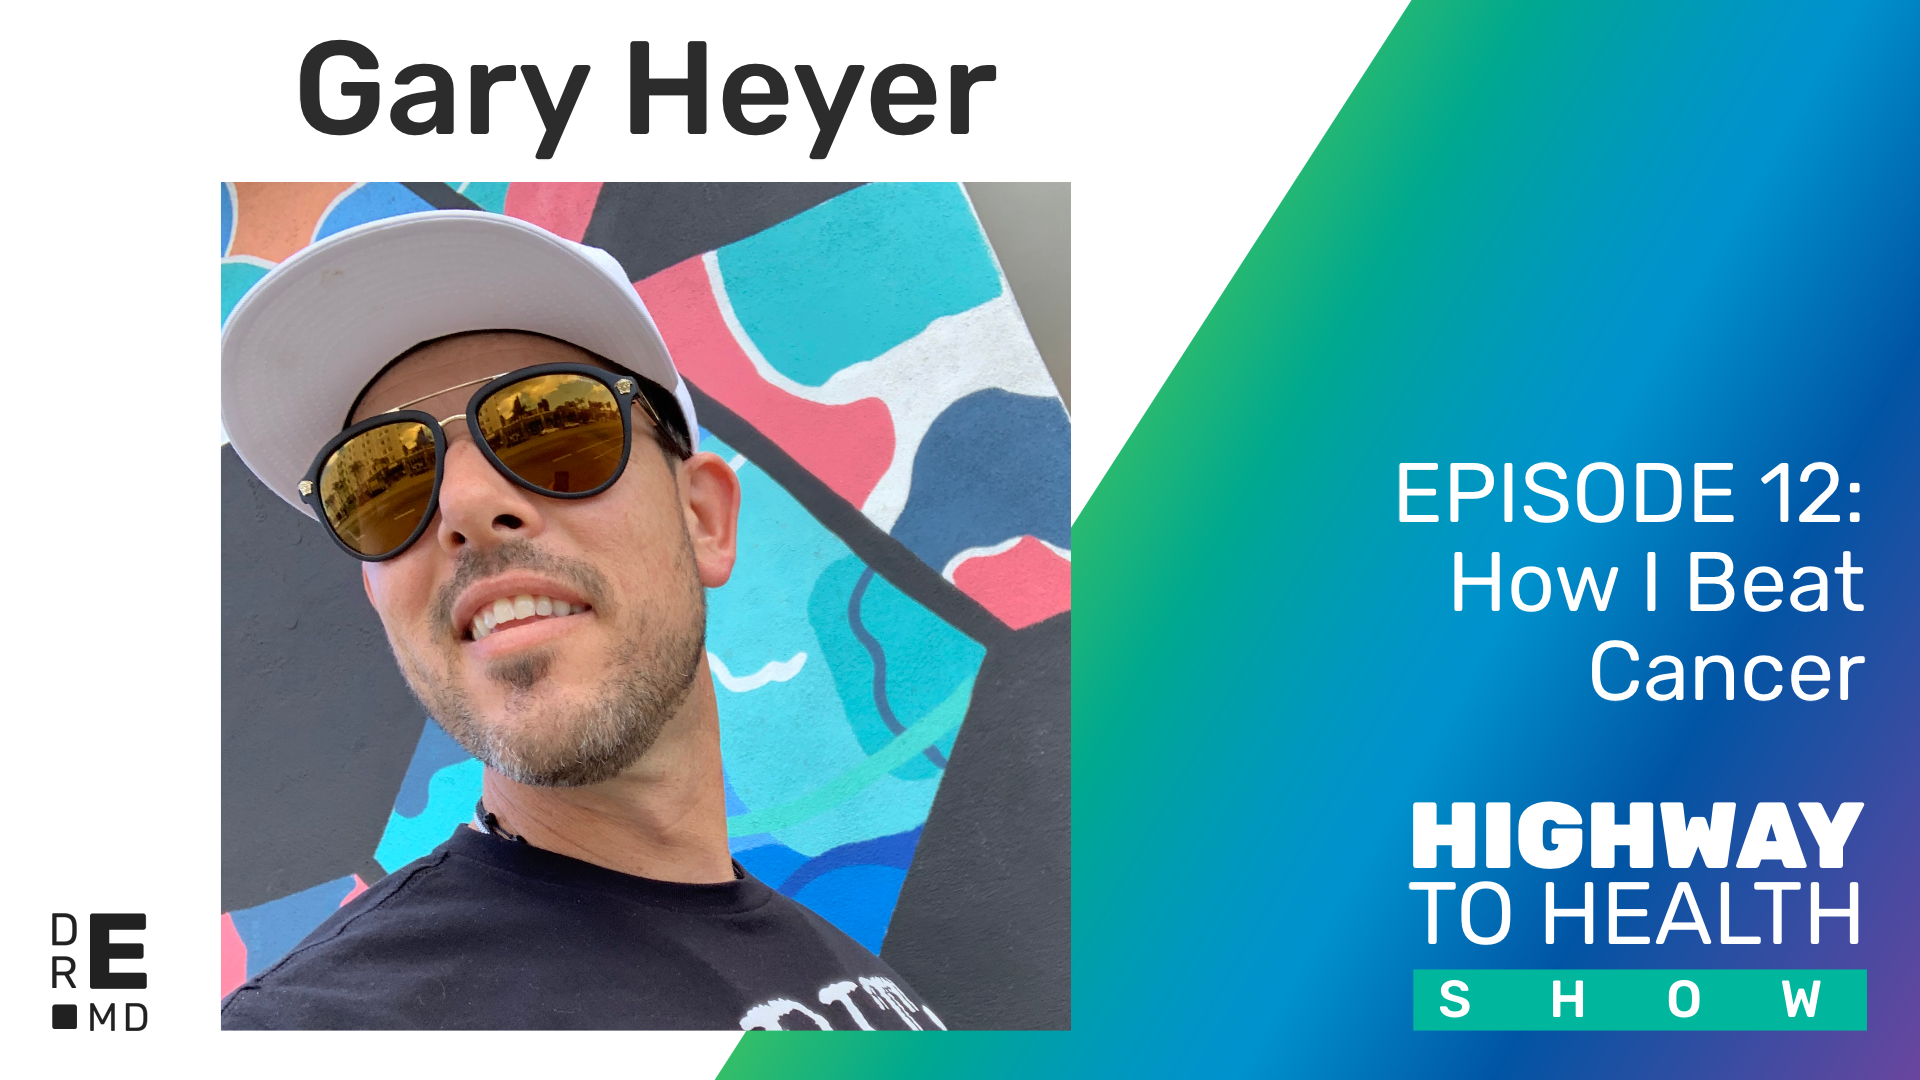 Highway to Health: Ep 12 - Gary Heyer